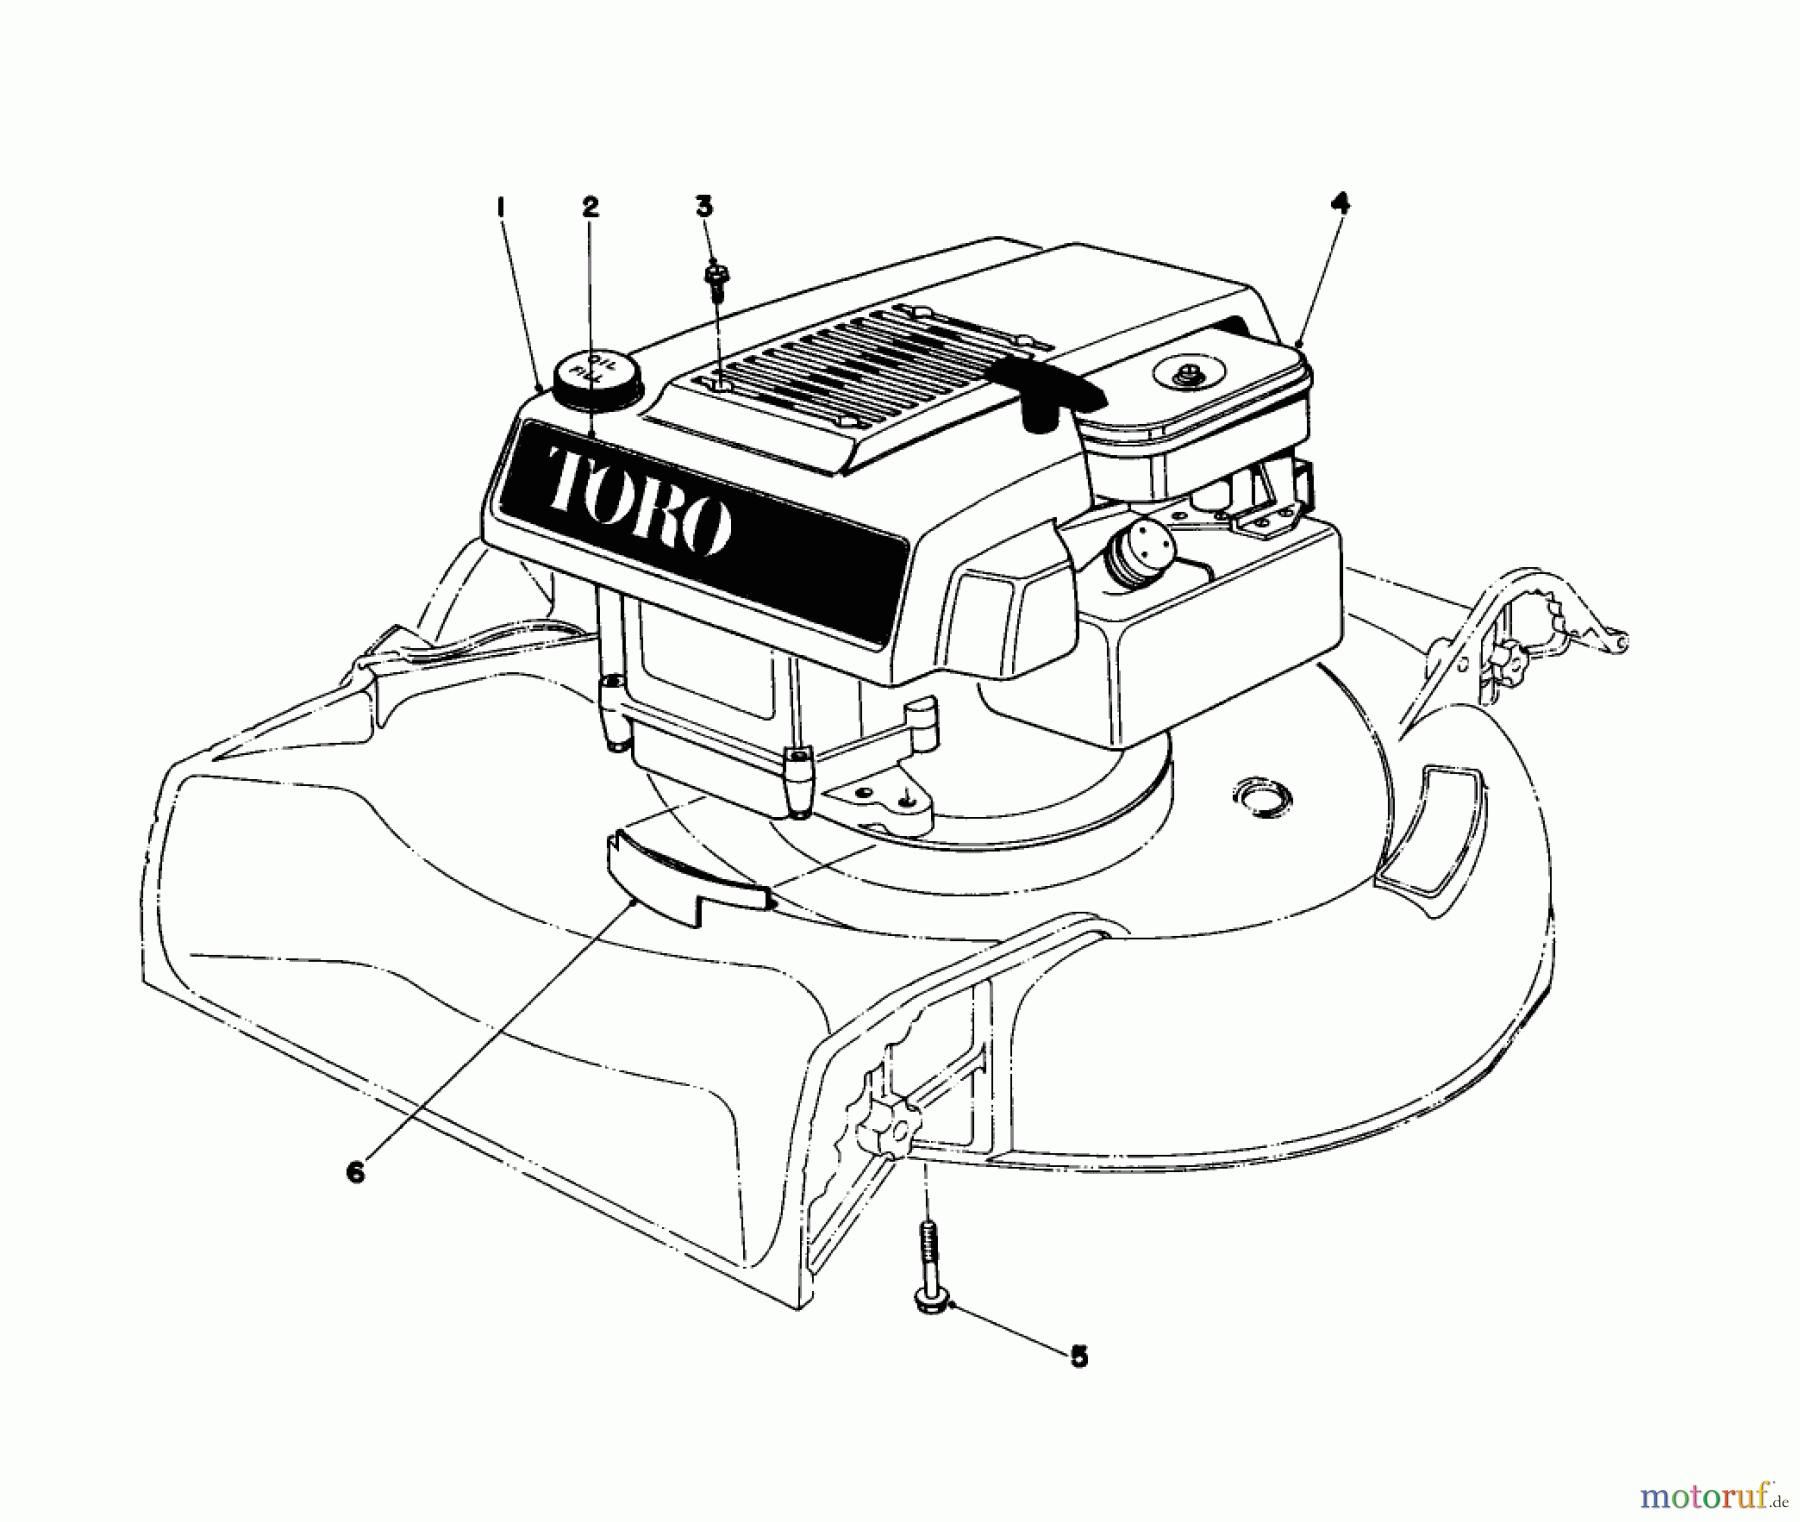  Toro Neu Mowers, Walk-Behind Seite 1 16320 - Toro Lawnmower, 1979 (9000001-9999999) ENGINE ASSEMBLY MODEL 16300 AND 16310